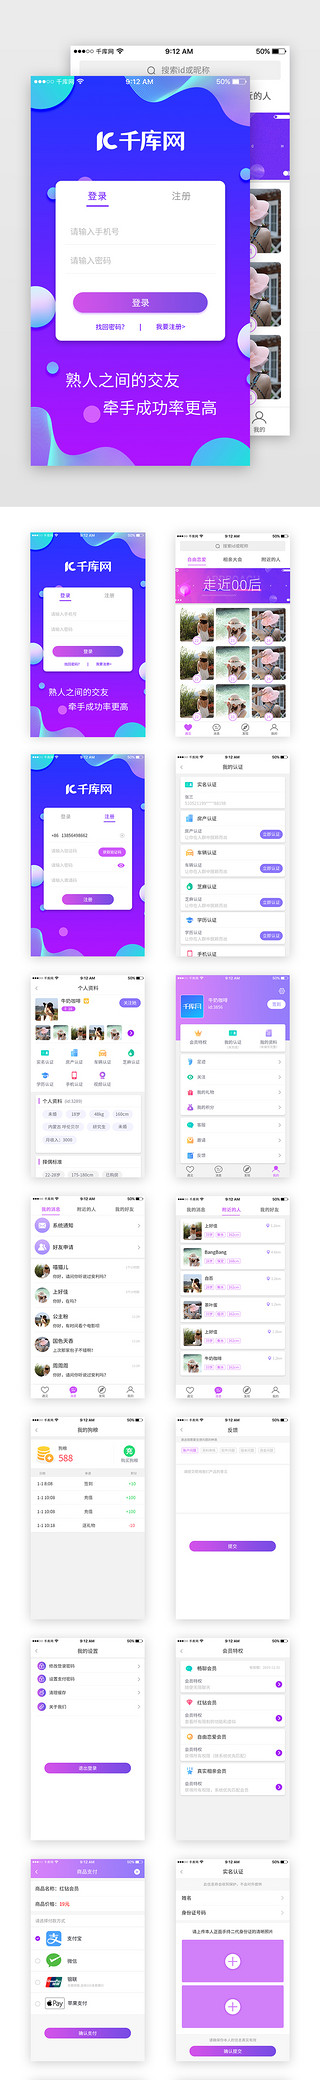 约会樱花季UI设计素材_紫色婚恋交友App套图